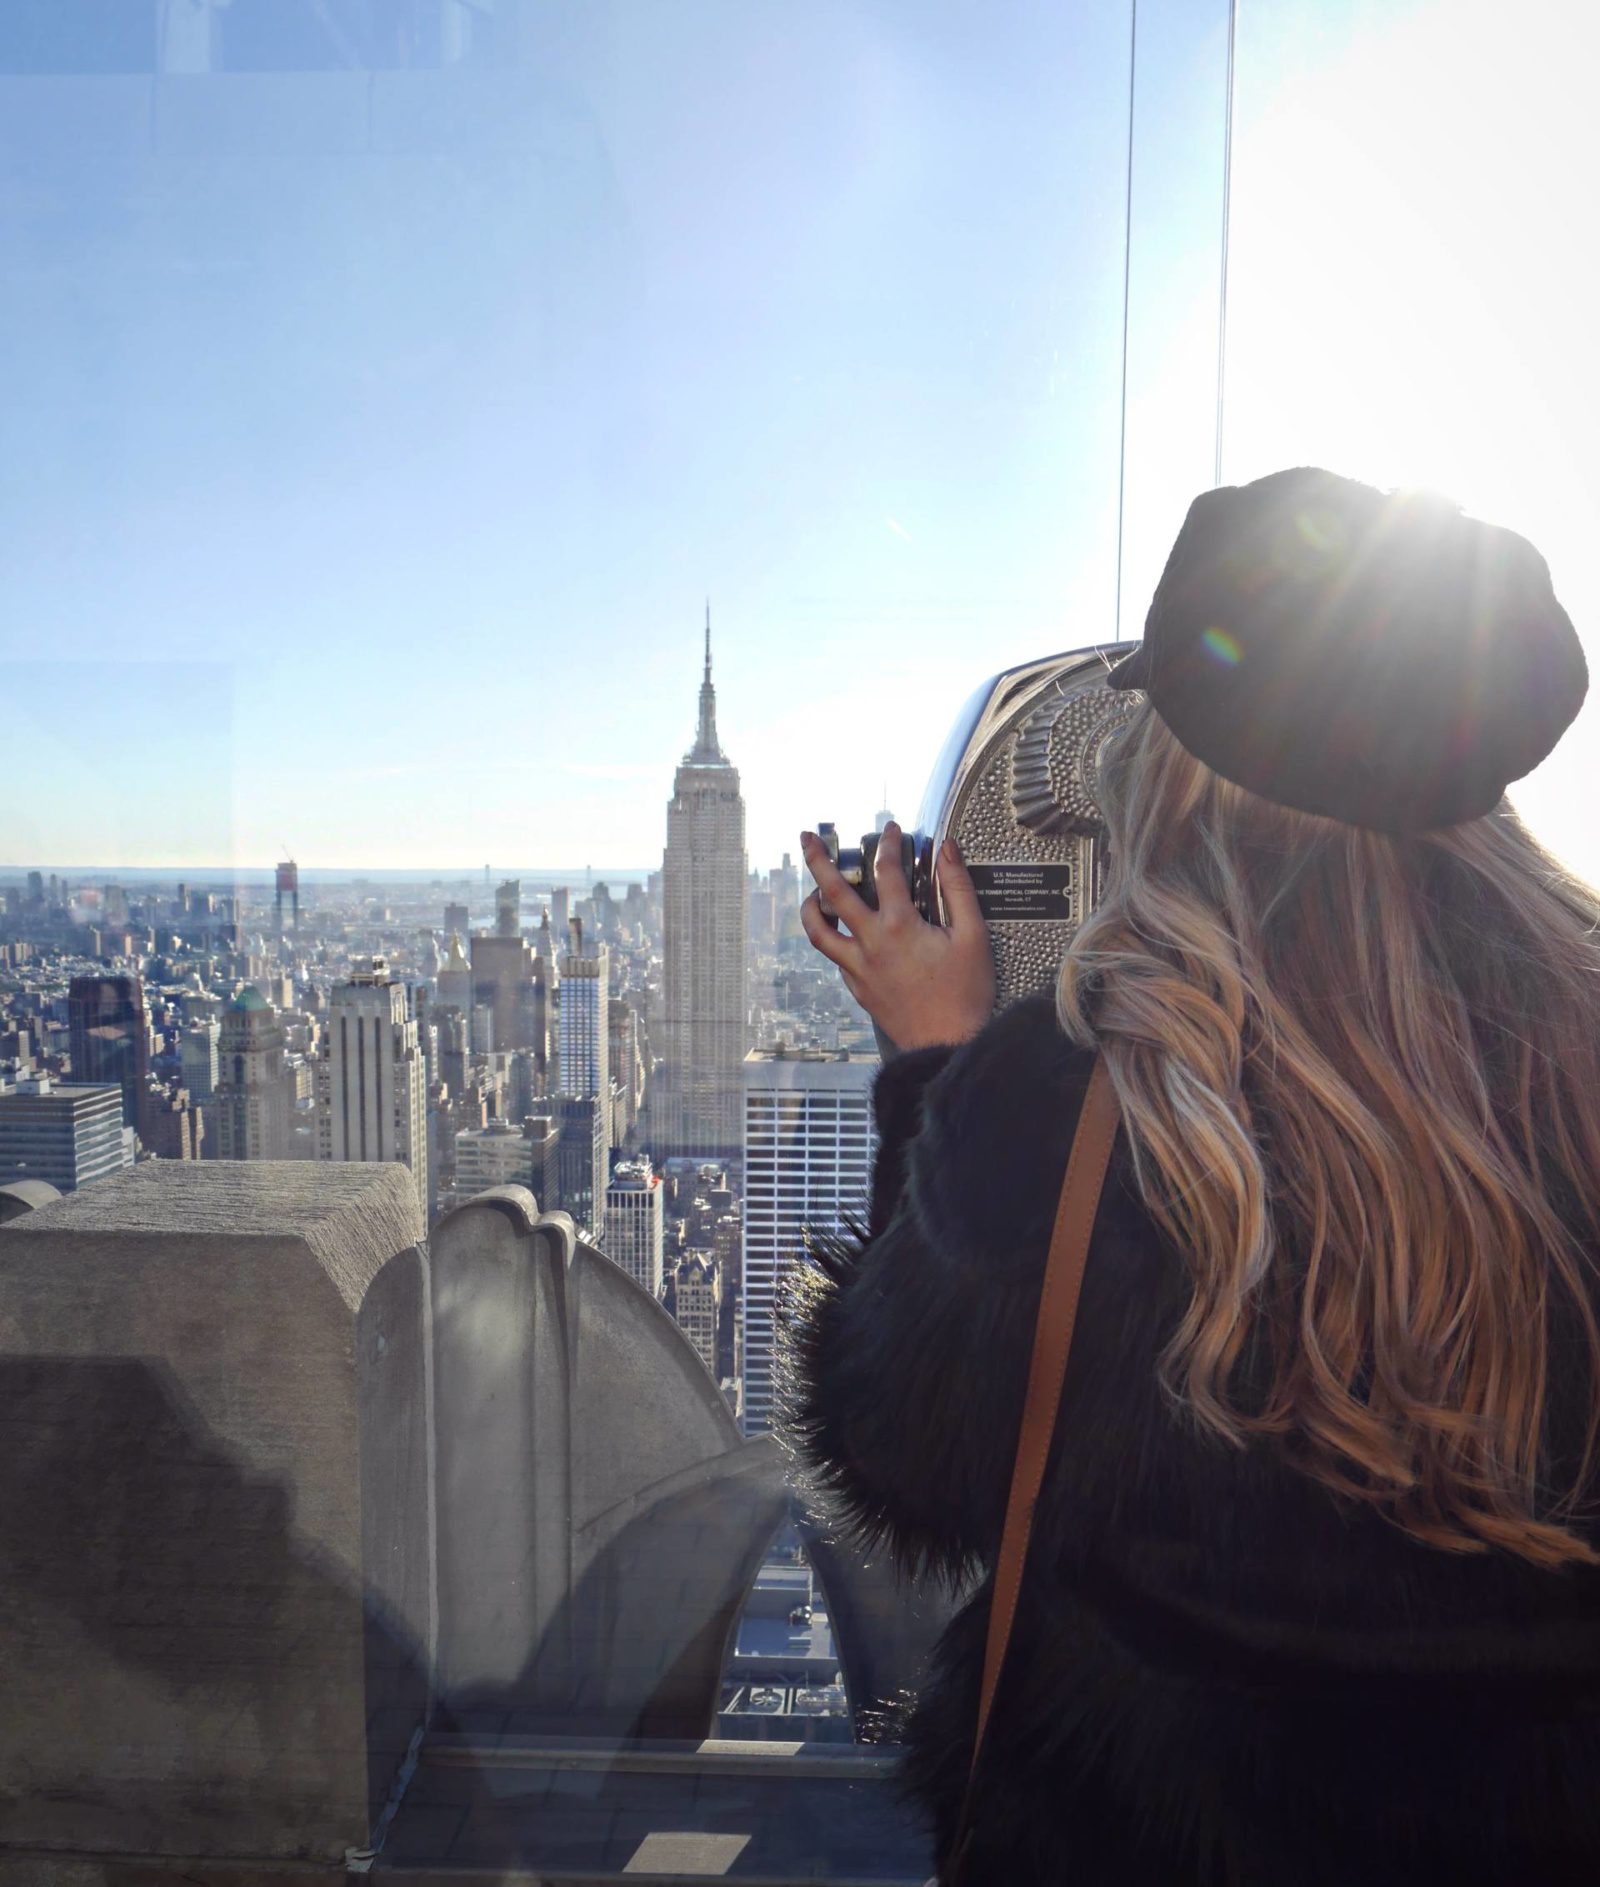 Íconos del horizonte: 4 de los monumentos arquitectónicos más famosos de la ciudad de Nueva York